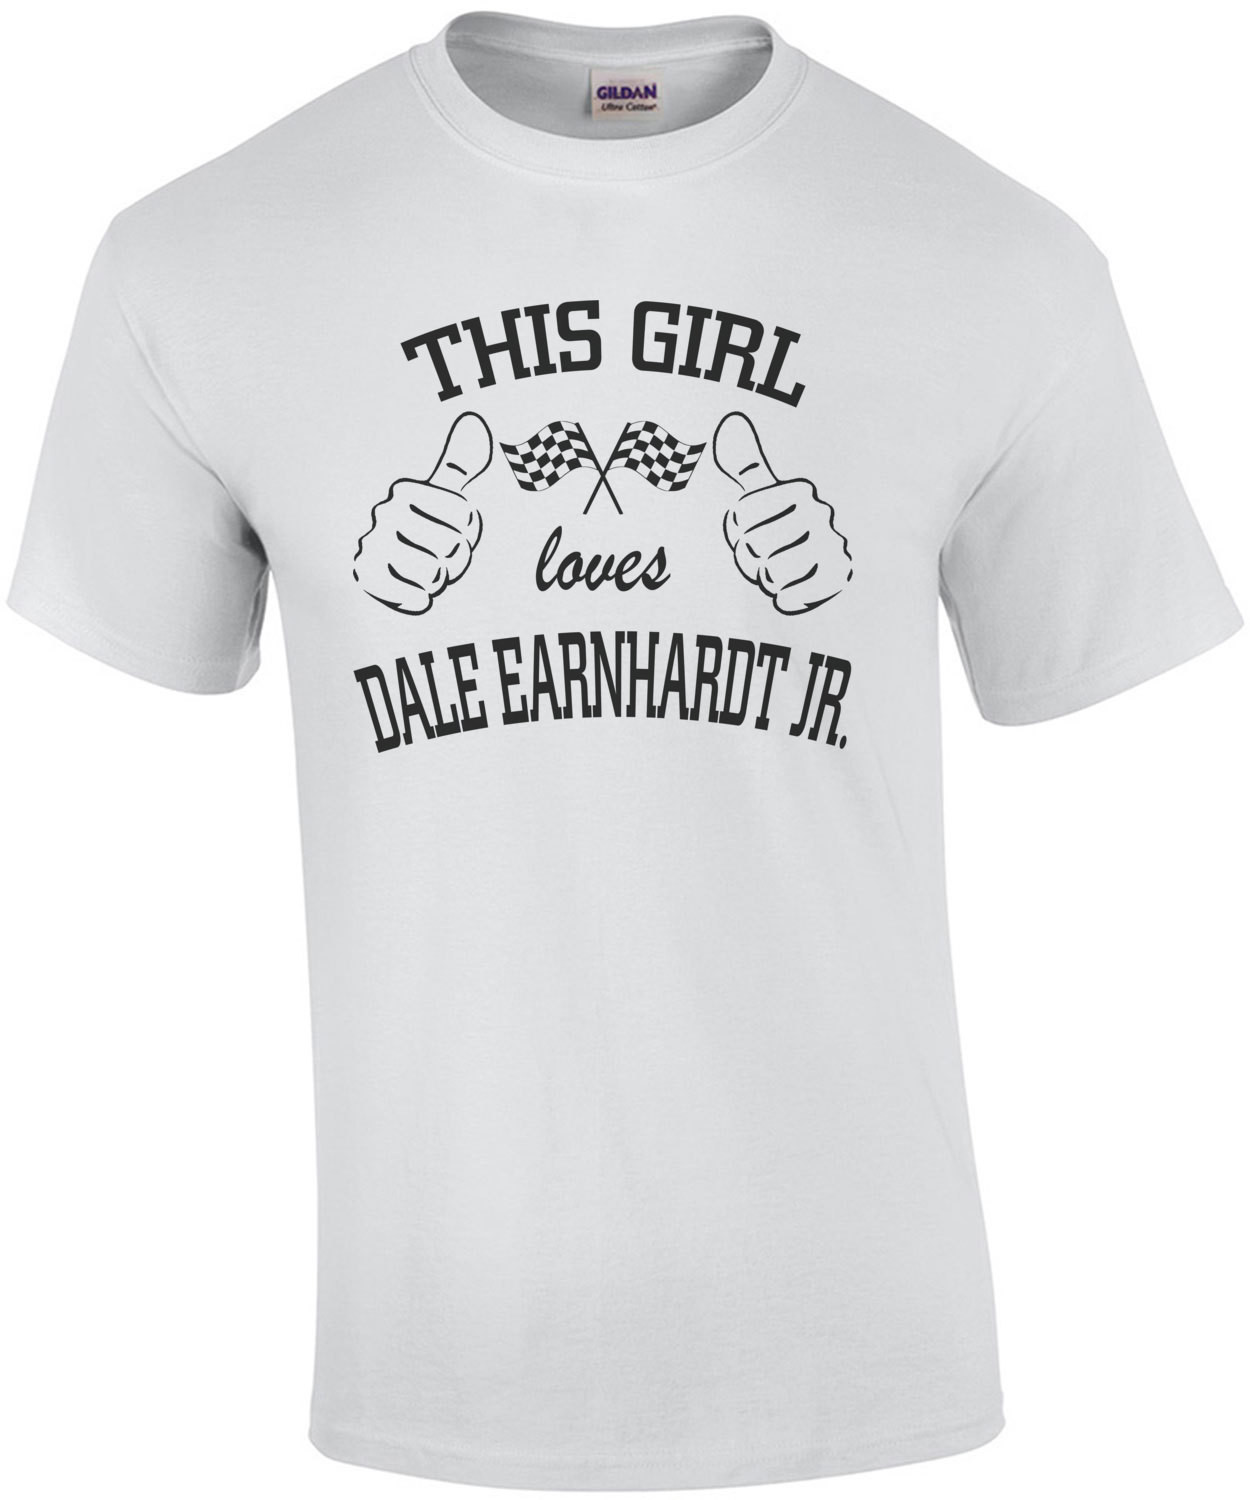 This Girl Loves Dale Earnhard Jr T-Shirt